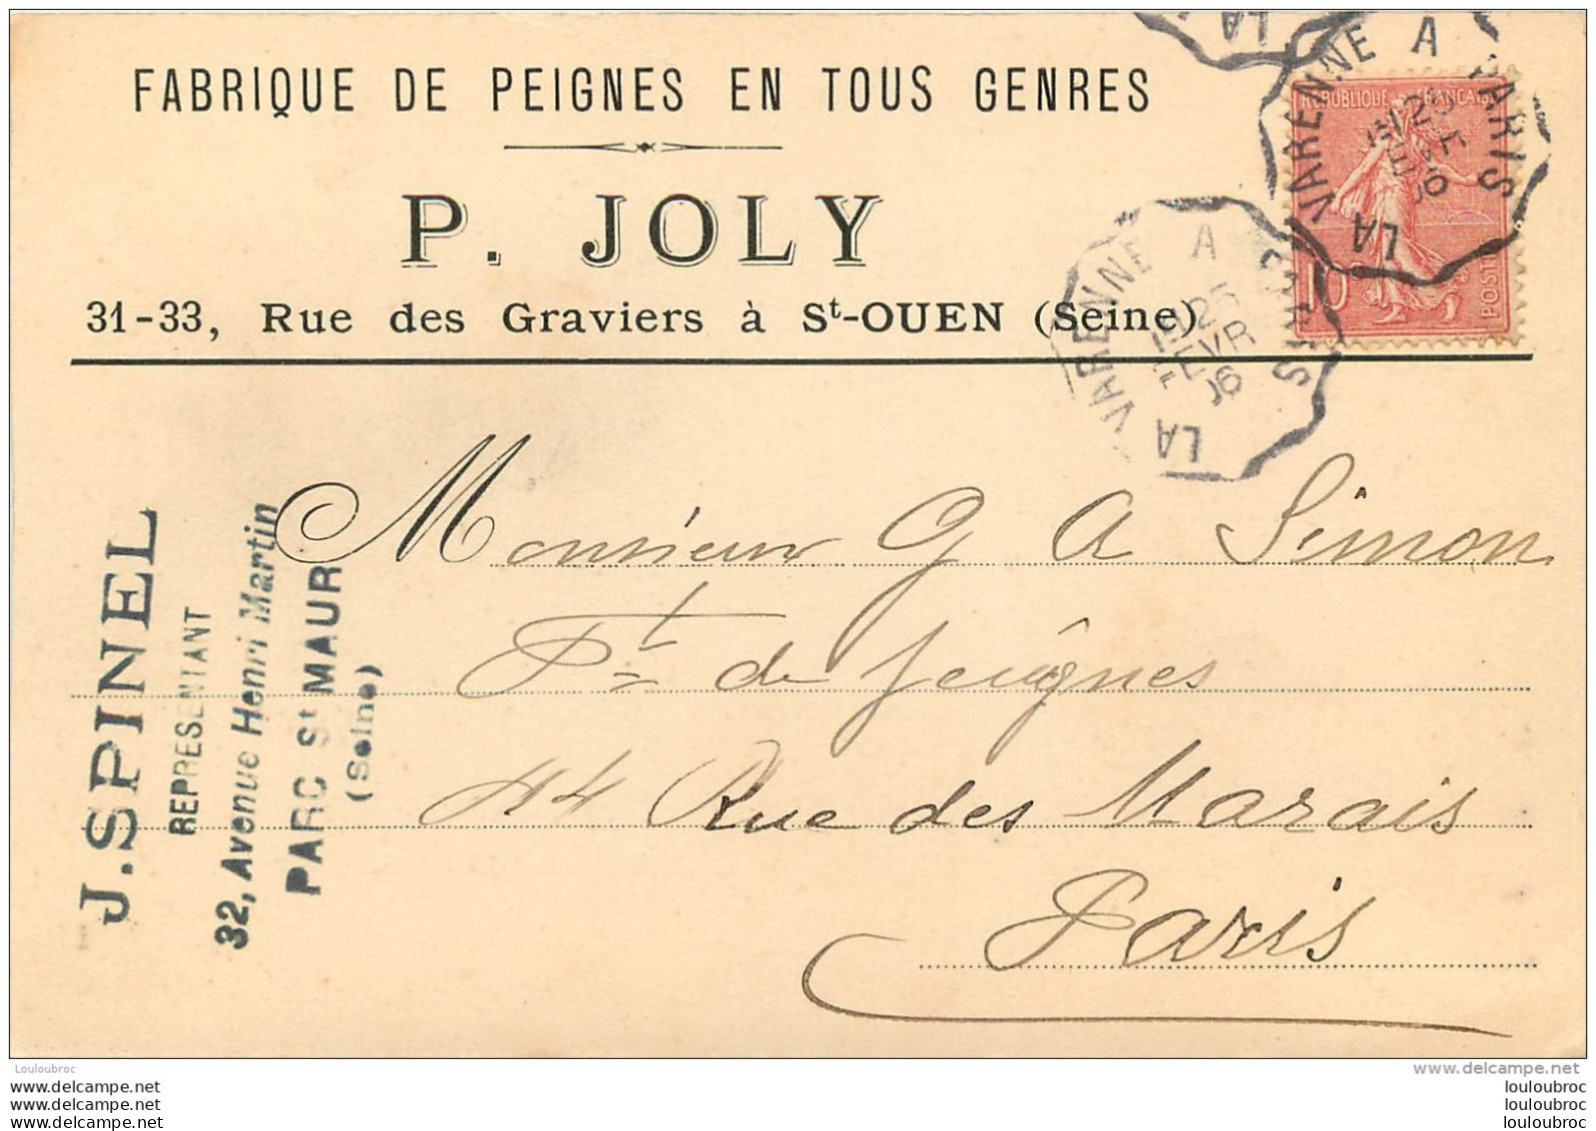 SAINT OUEN P.  JOLY FABRIQUE DE PEIGNES EN TOUS GENRES 31-33 RUE DES GRAVIERS - Saint Ouen